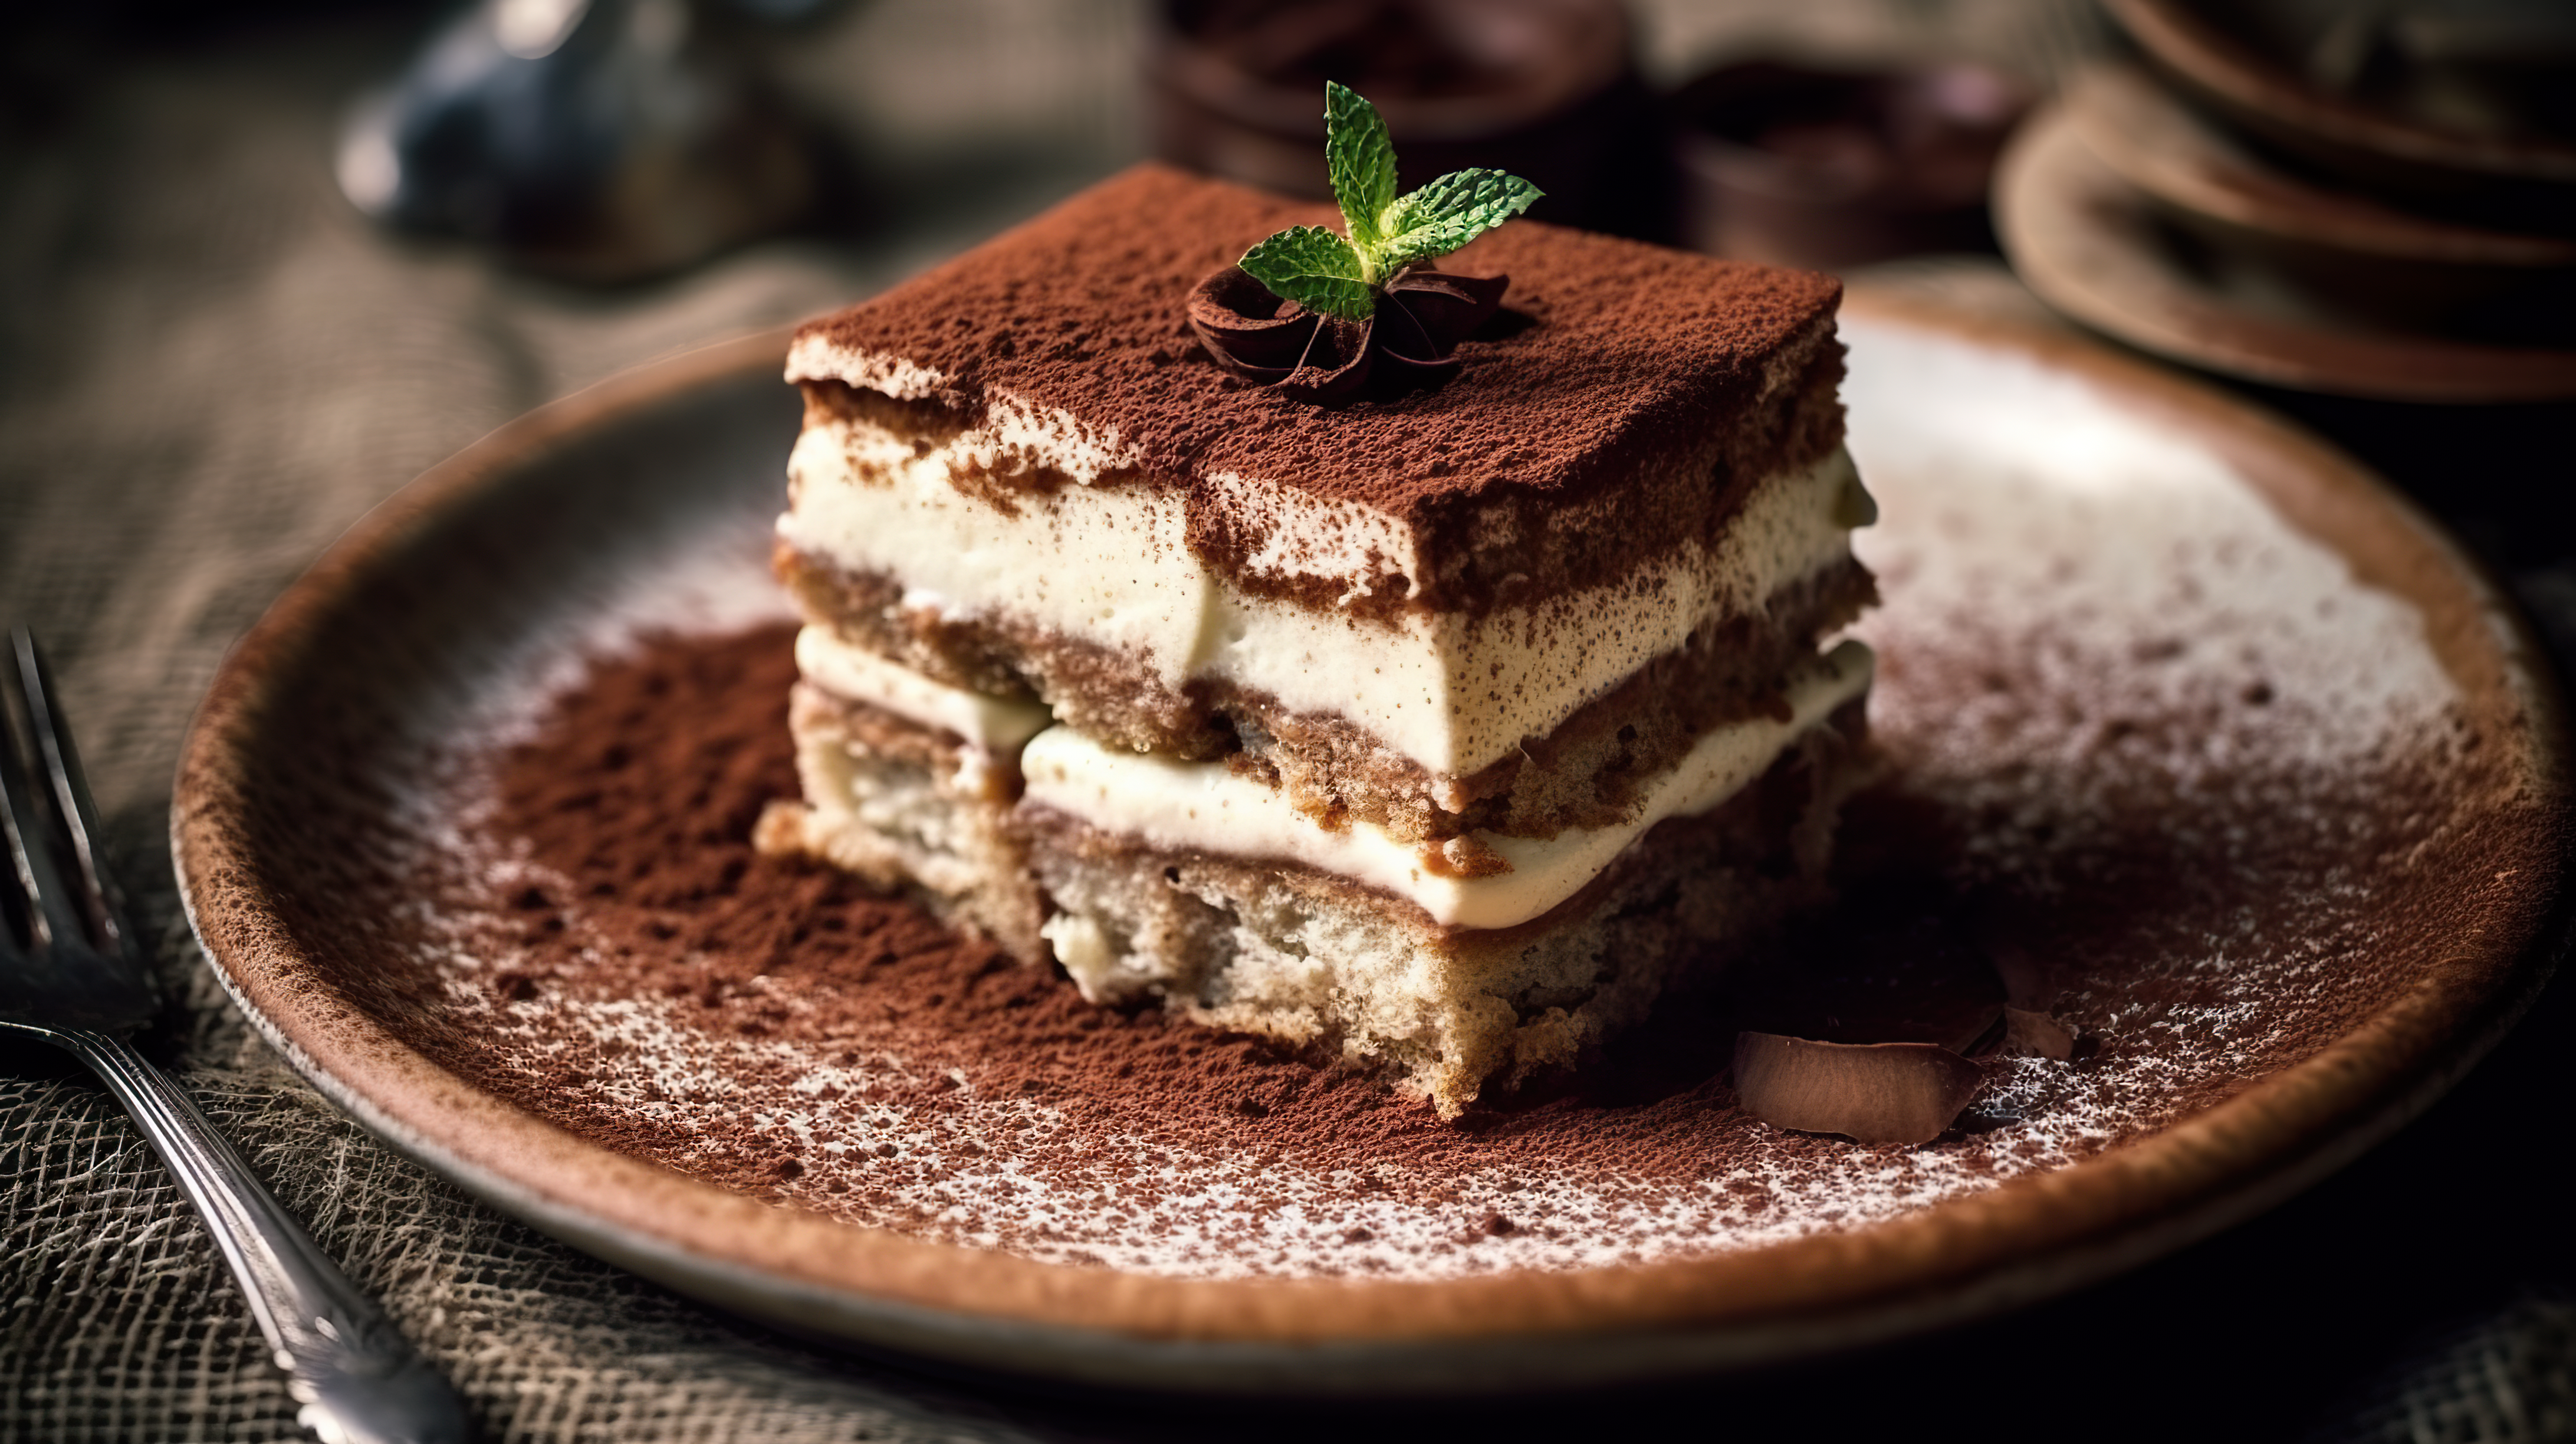 A closeup shot of a layered tiramisu cake with creamy mascarpone and dusted cocoa